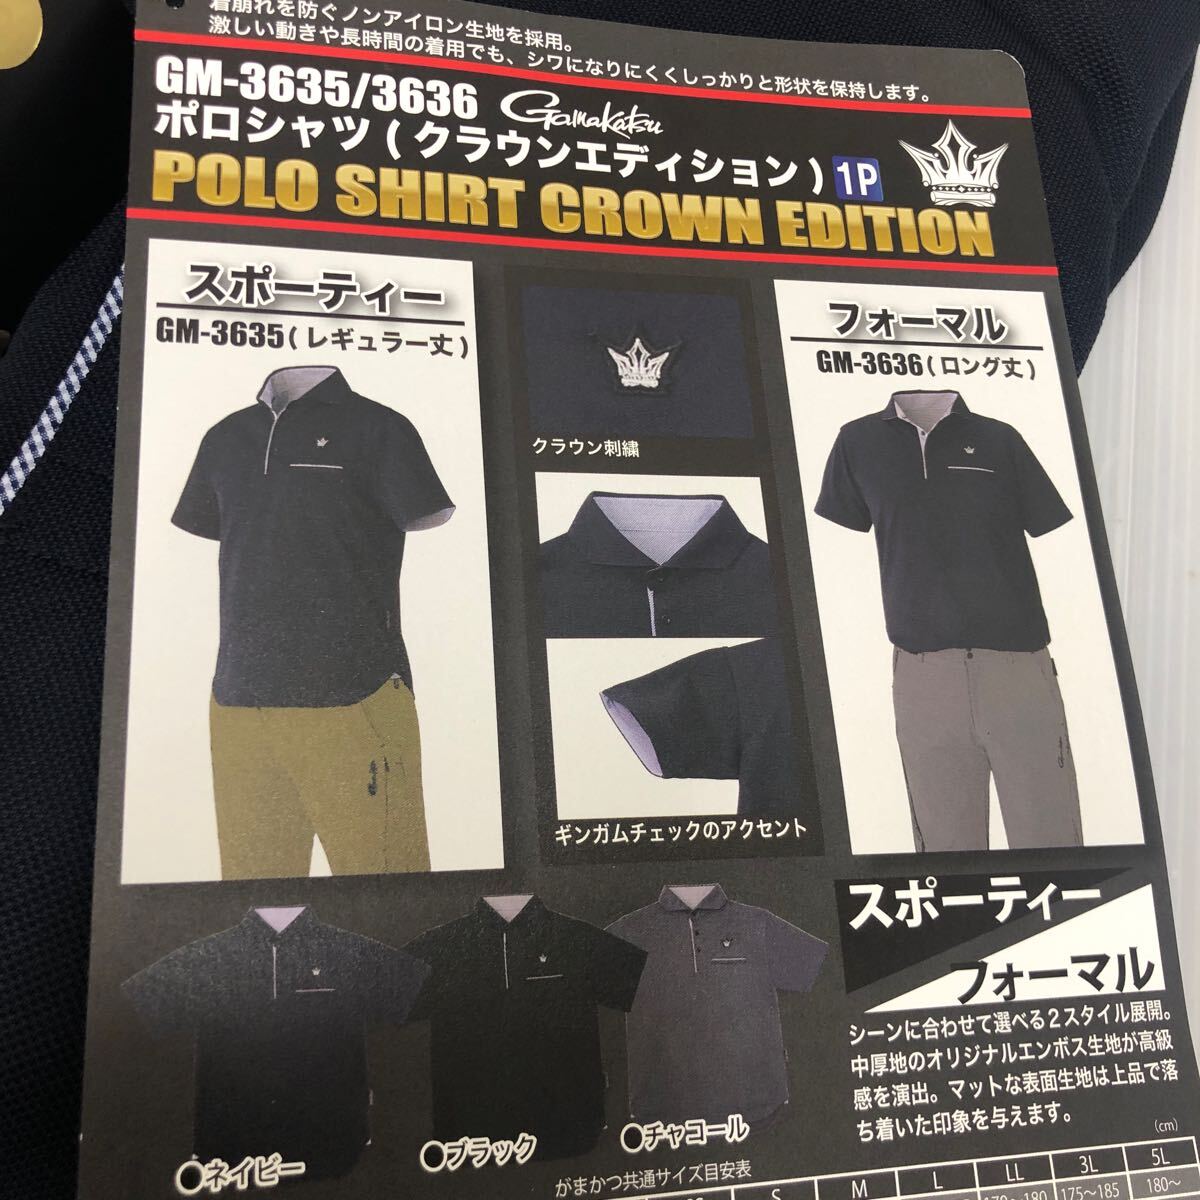  Gamakatsu рубашка-поло ( Crown выпуск длинный длина ) GM-3636 темно-синий M размер [ новый товар не использовался товар ]60 размер отправка 60460